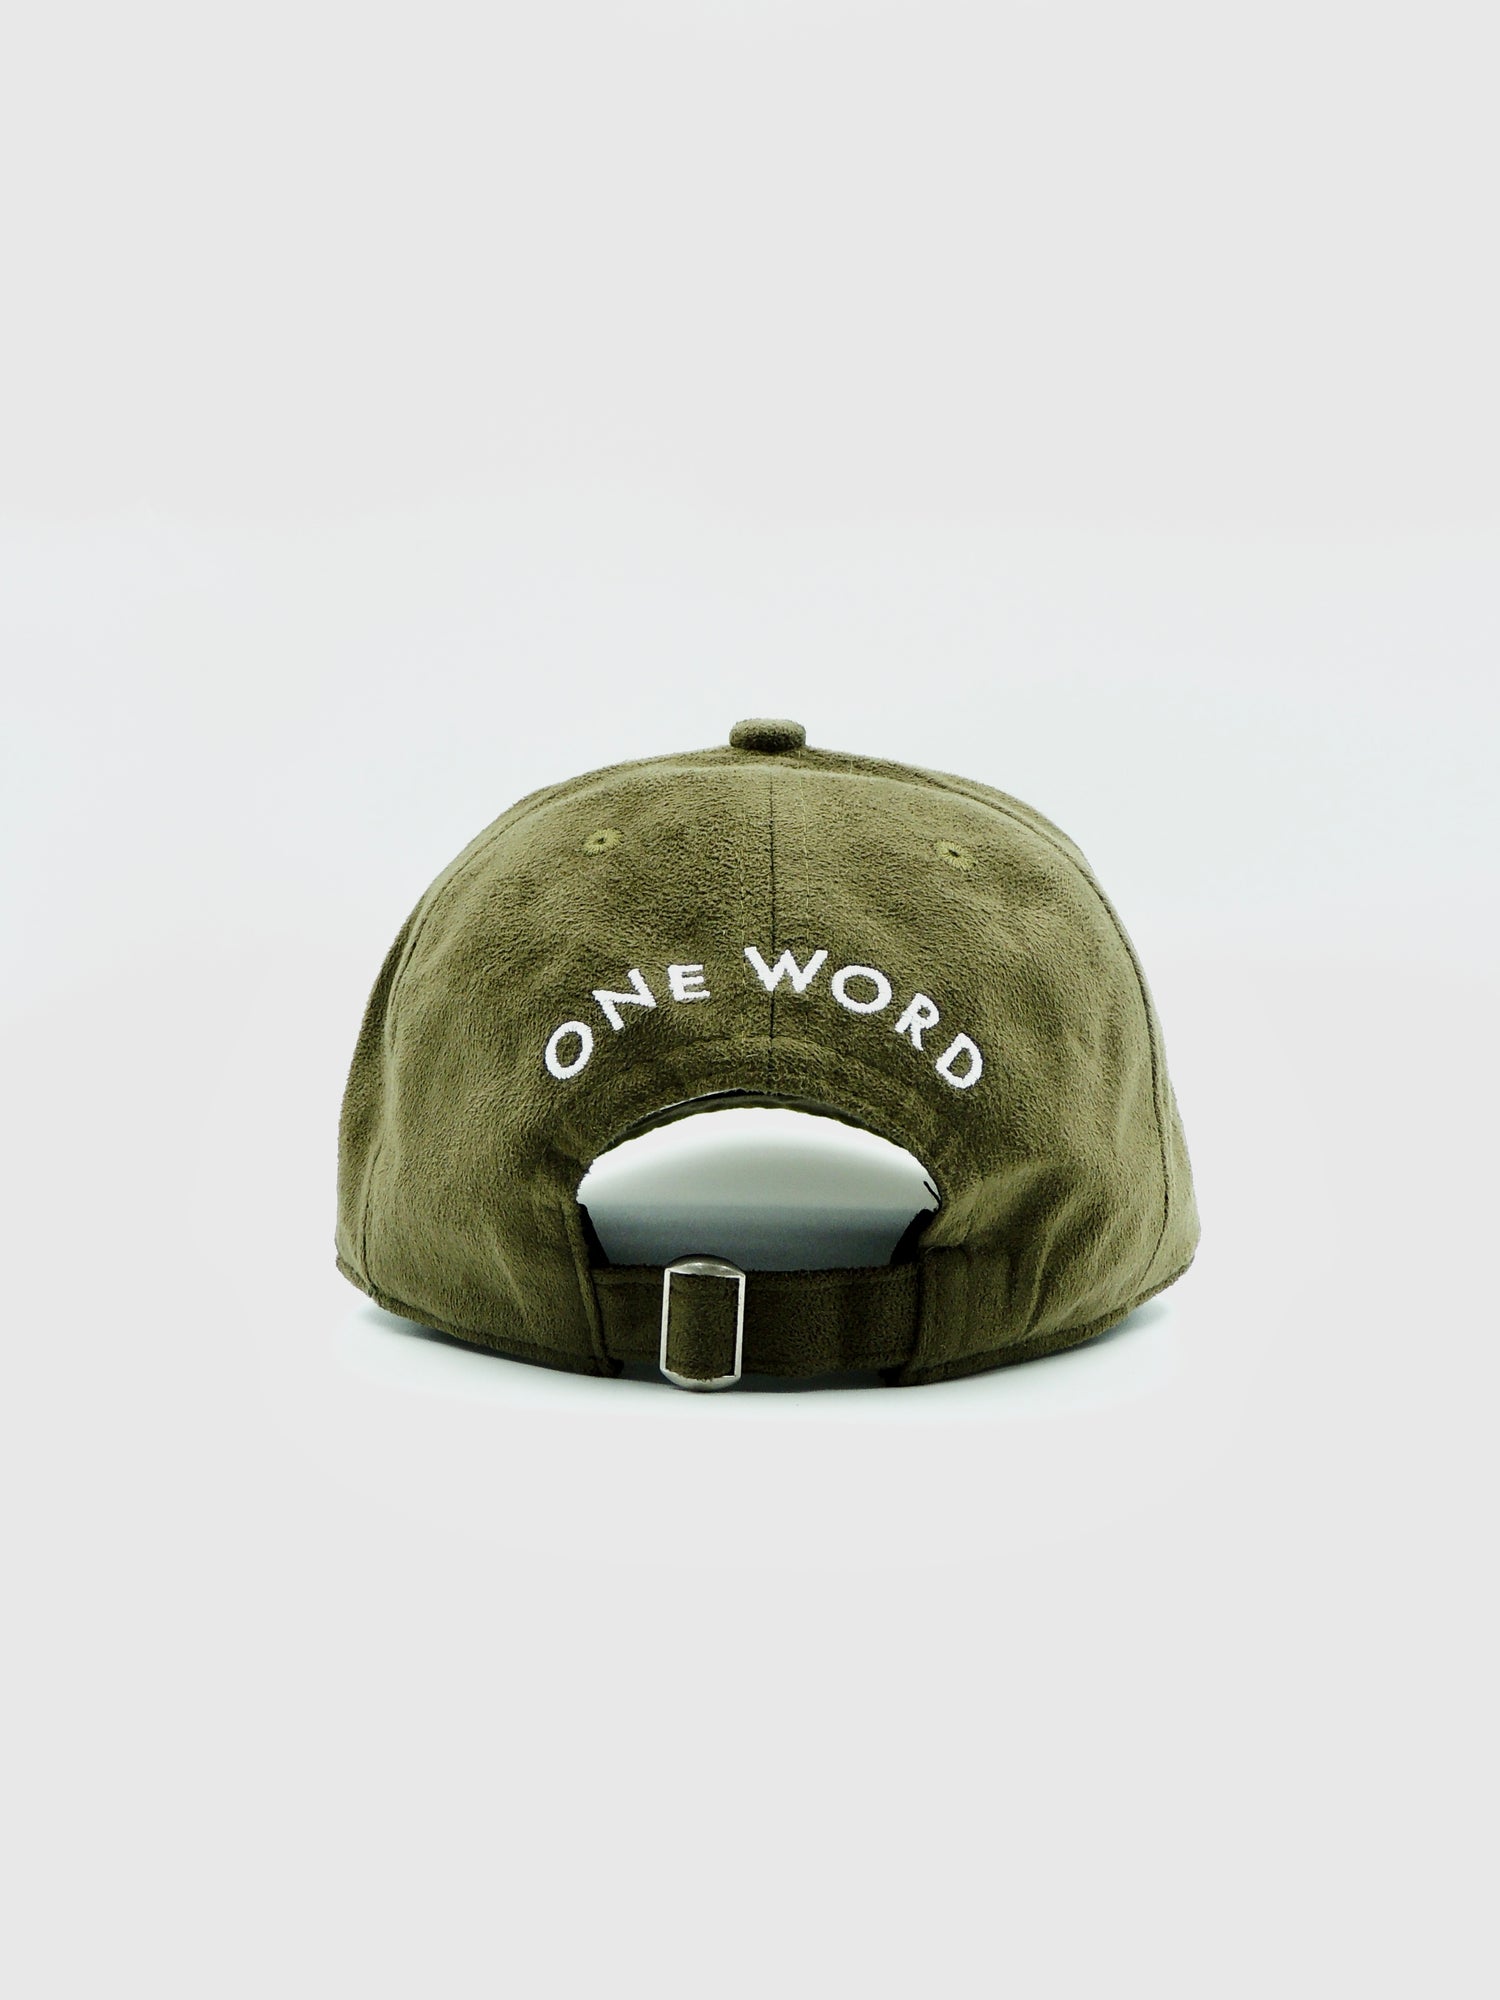 [keyword]-One Word StoreNo Excuses - Suede Hat